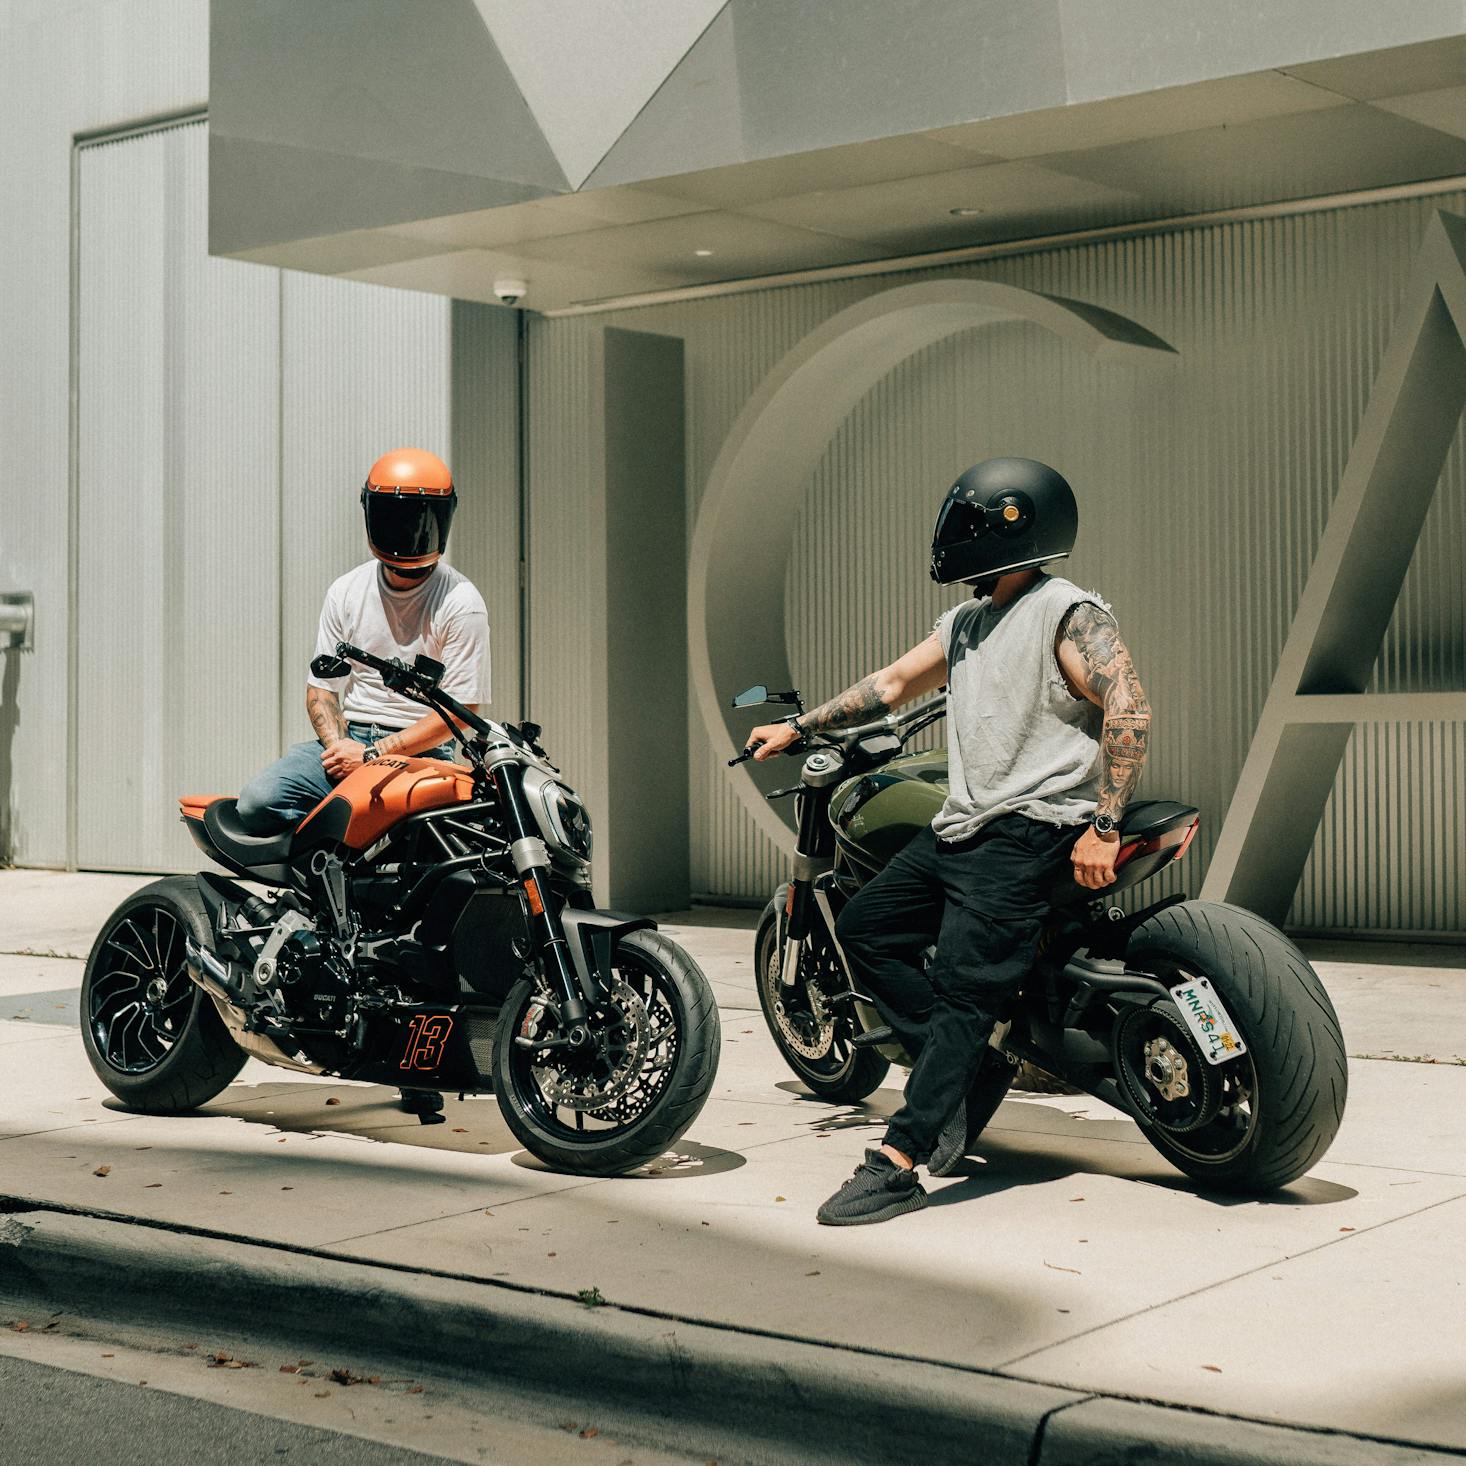 Motorbikes in Miami, Florida